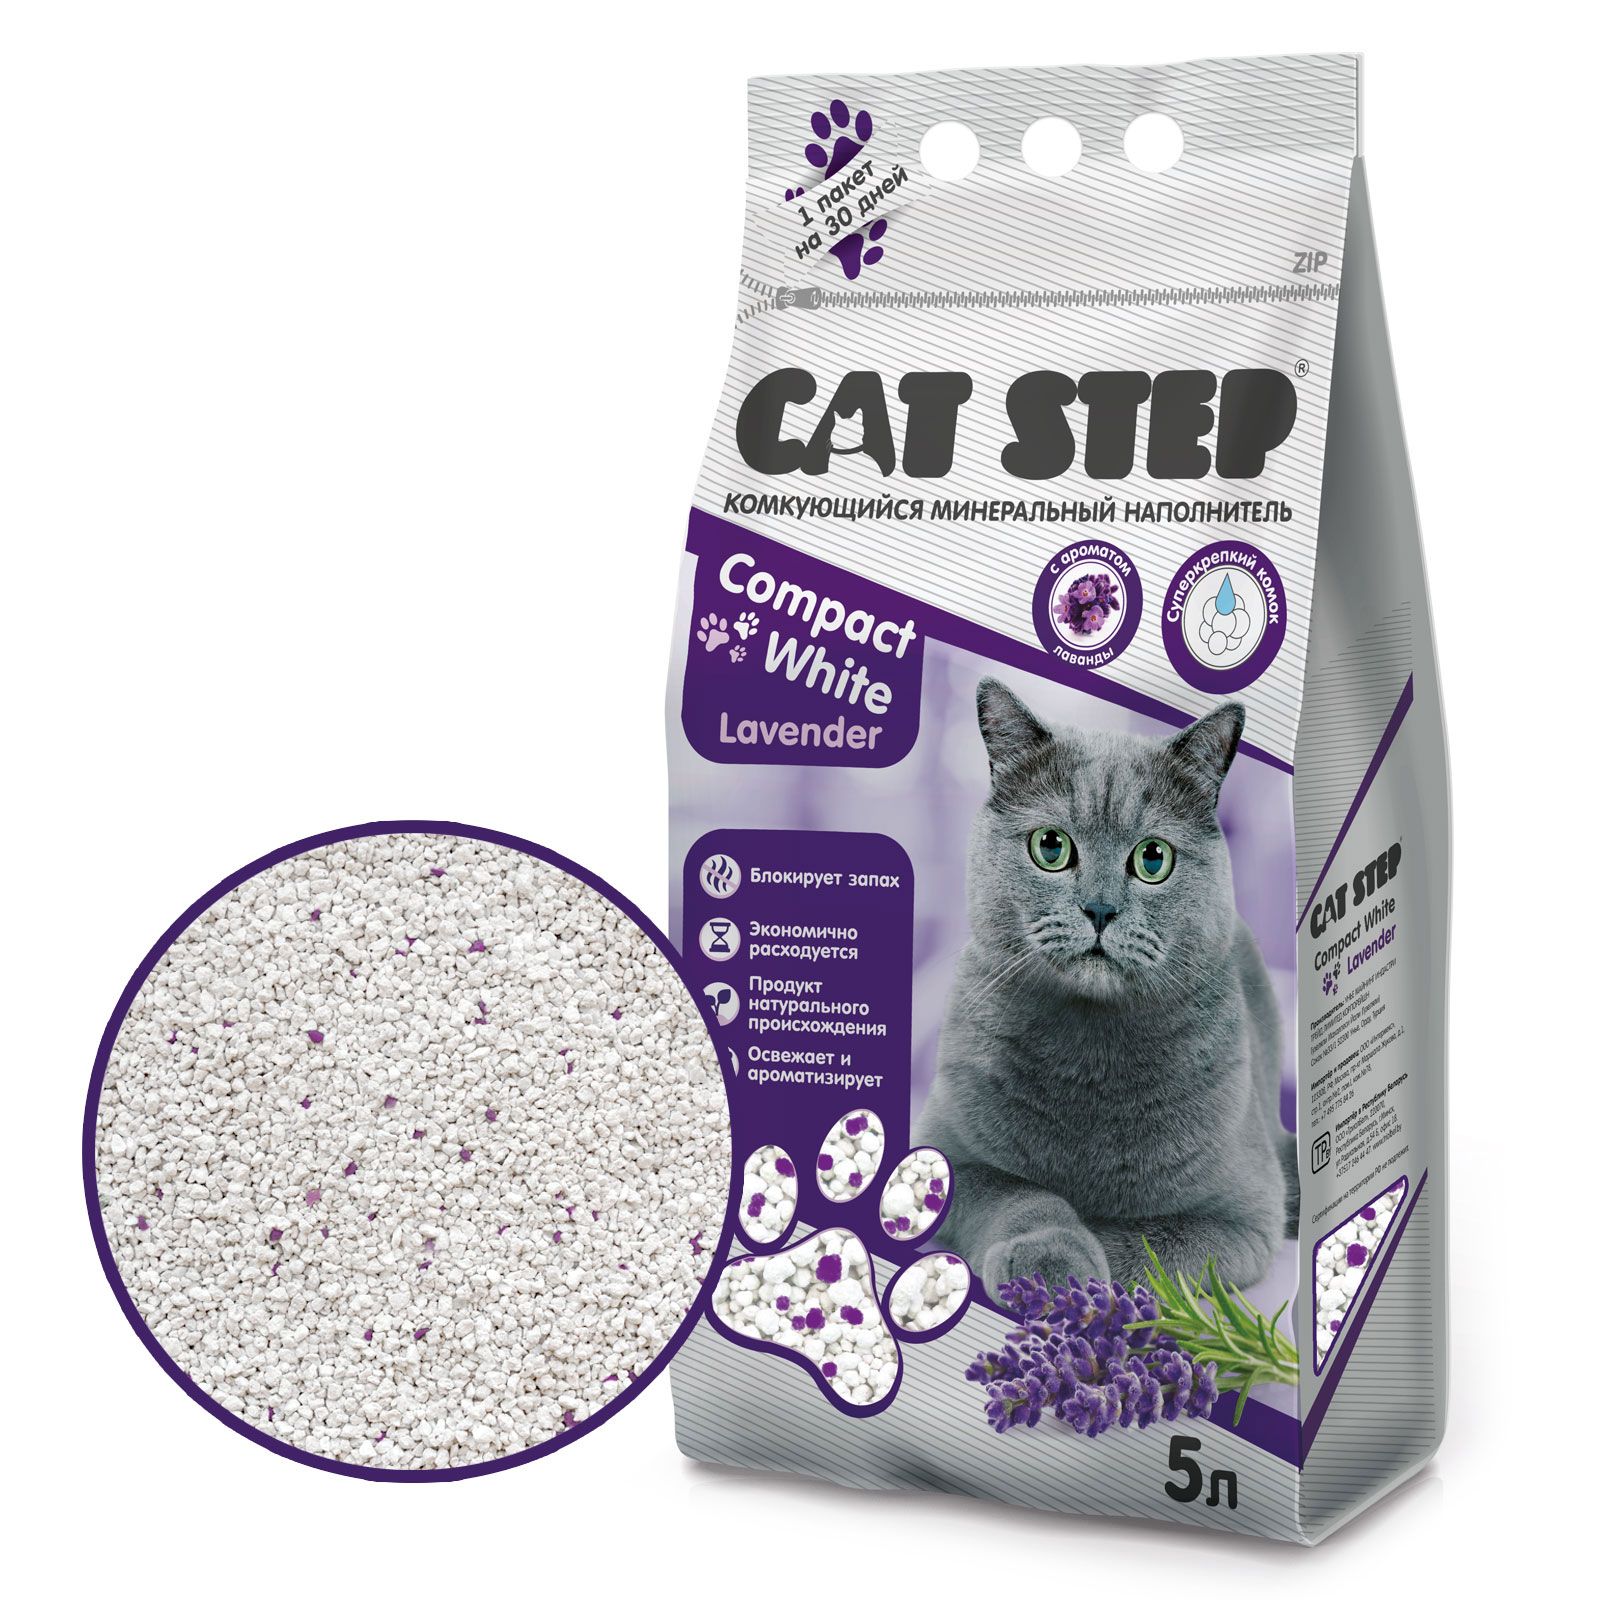 Наполнитель для кошки отзывы. Cat Step наполнитель комкующийся. Наполнитель для кошачьего туалета Cat Step. Cat Step Compact наполнитель комкующийся минеральный для кошек. Cat Step Compact White Carbon.